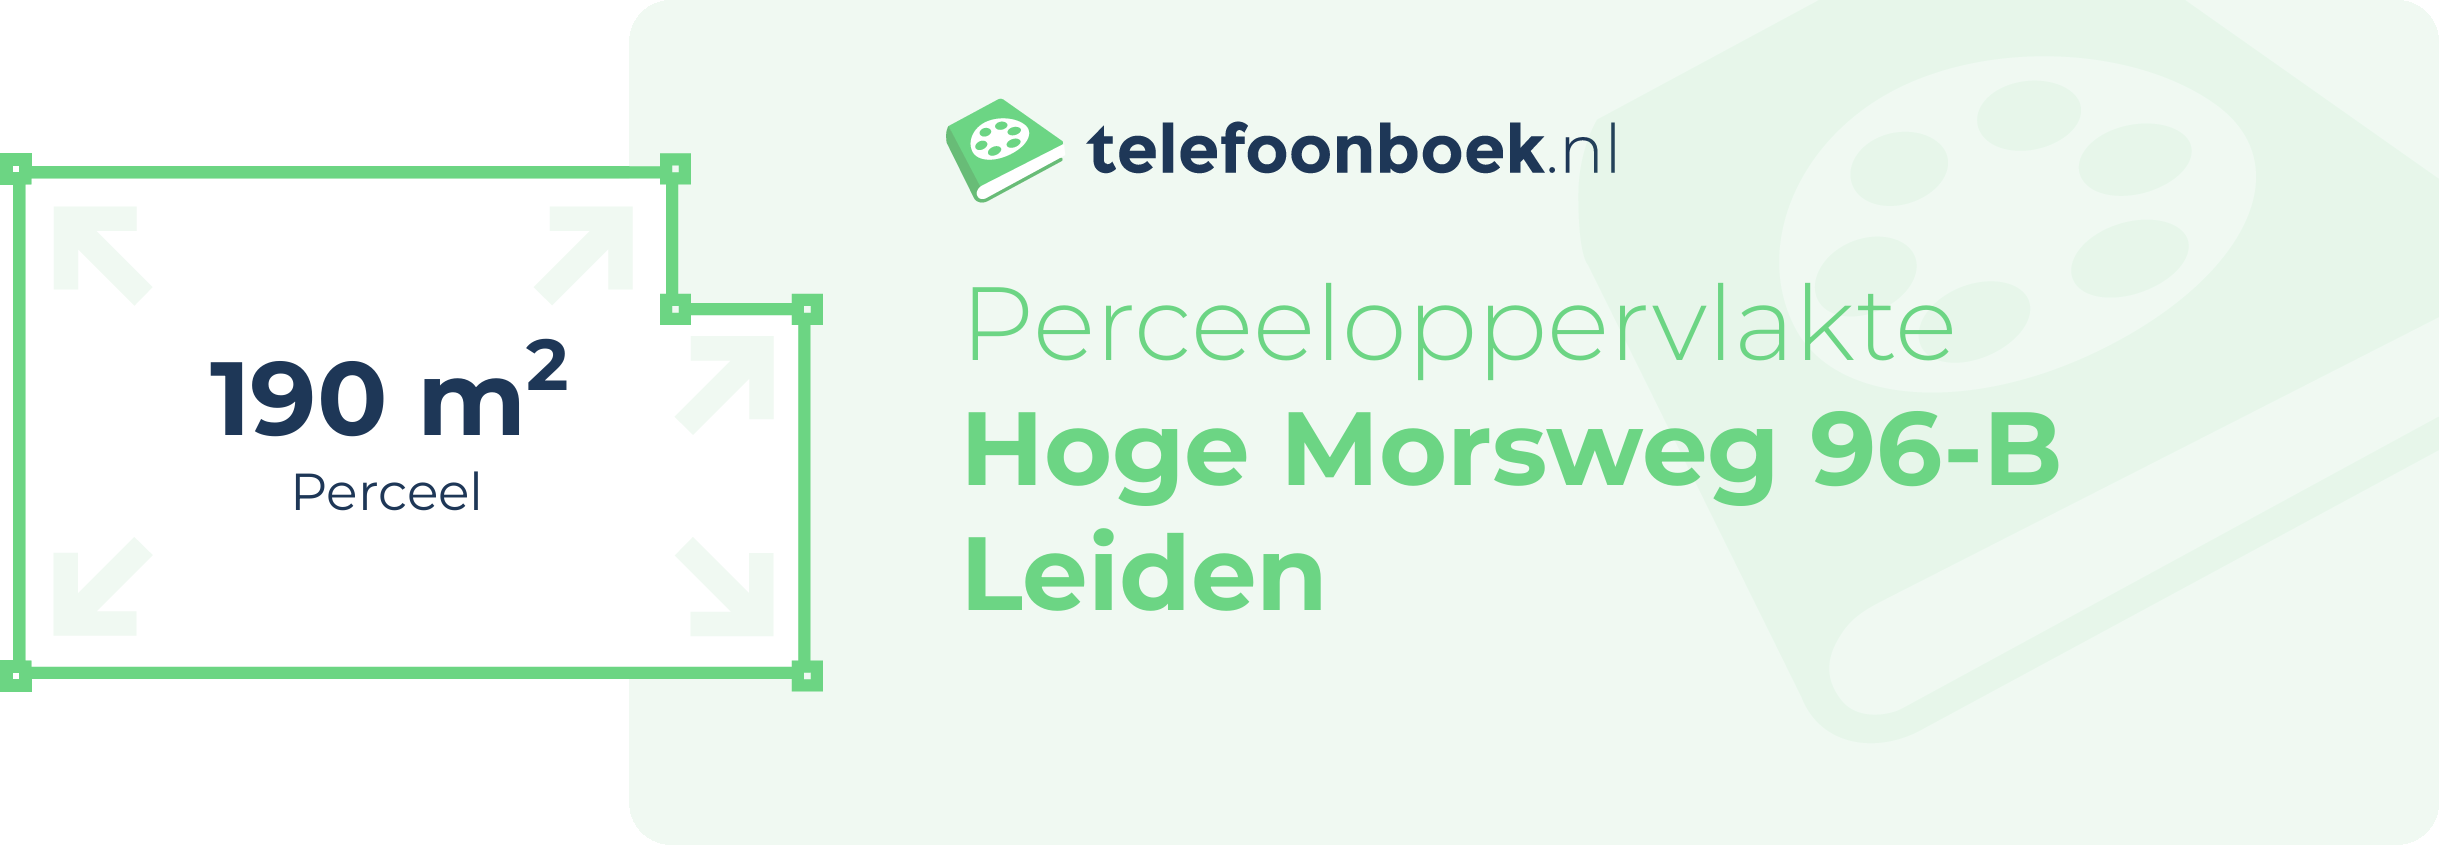 Perceeloppervlakte Hoge Morsweg 96-B Leiden